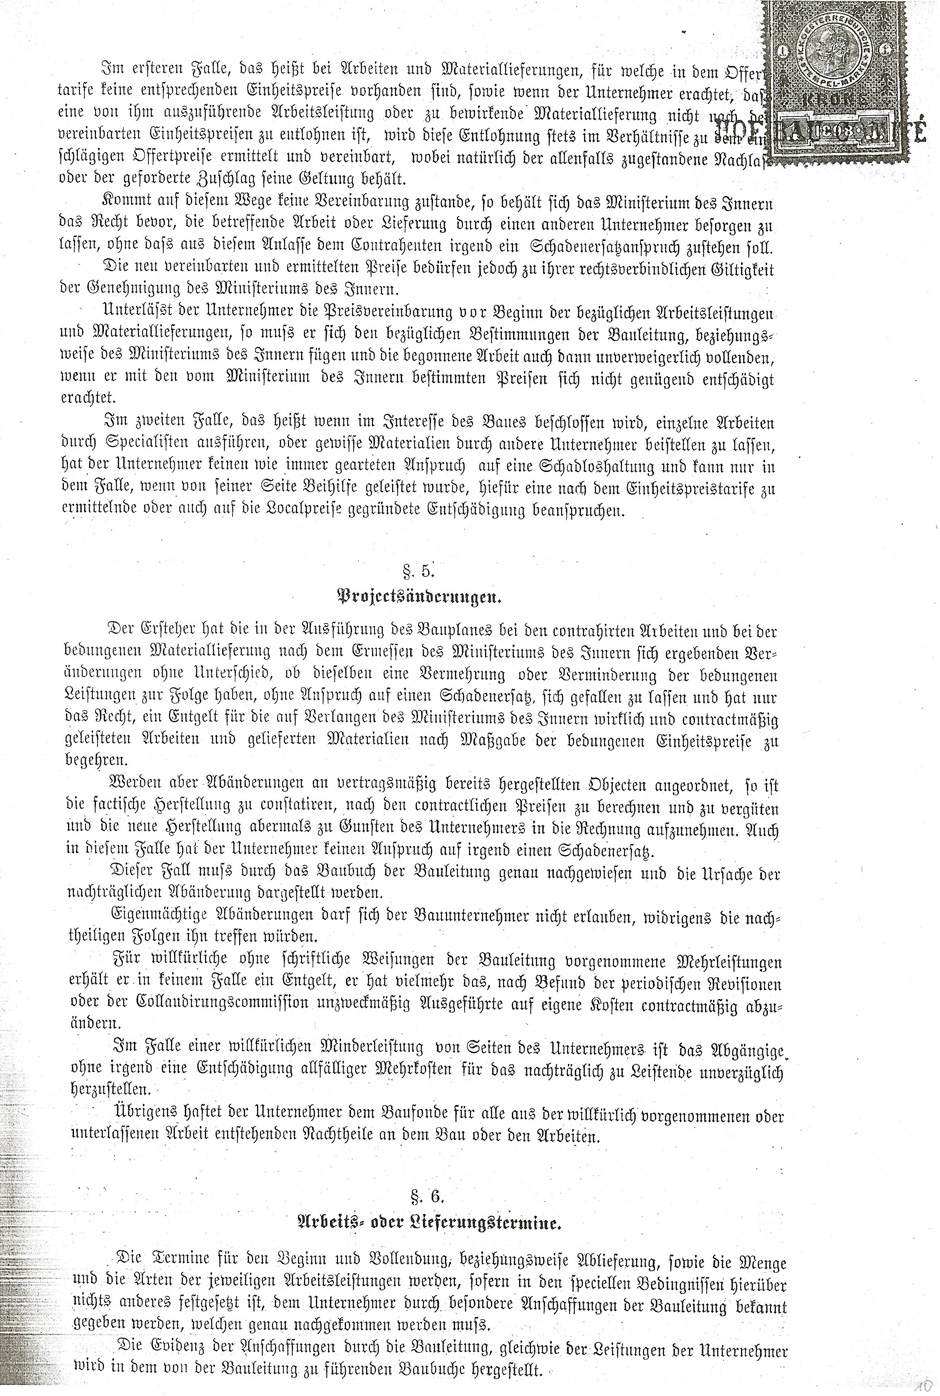 Lieferung von Dachkonstruktionen für das Haus-Hof-Staatsarchiv, Blatt 10